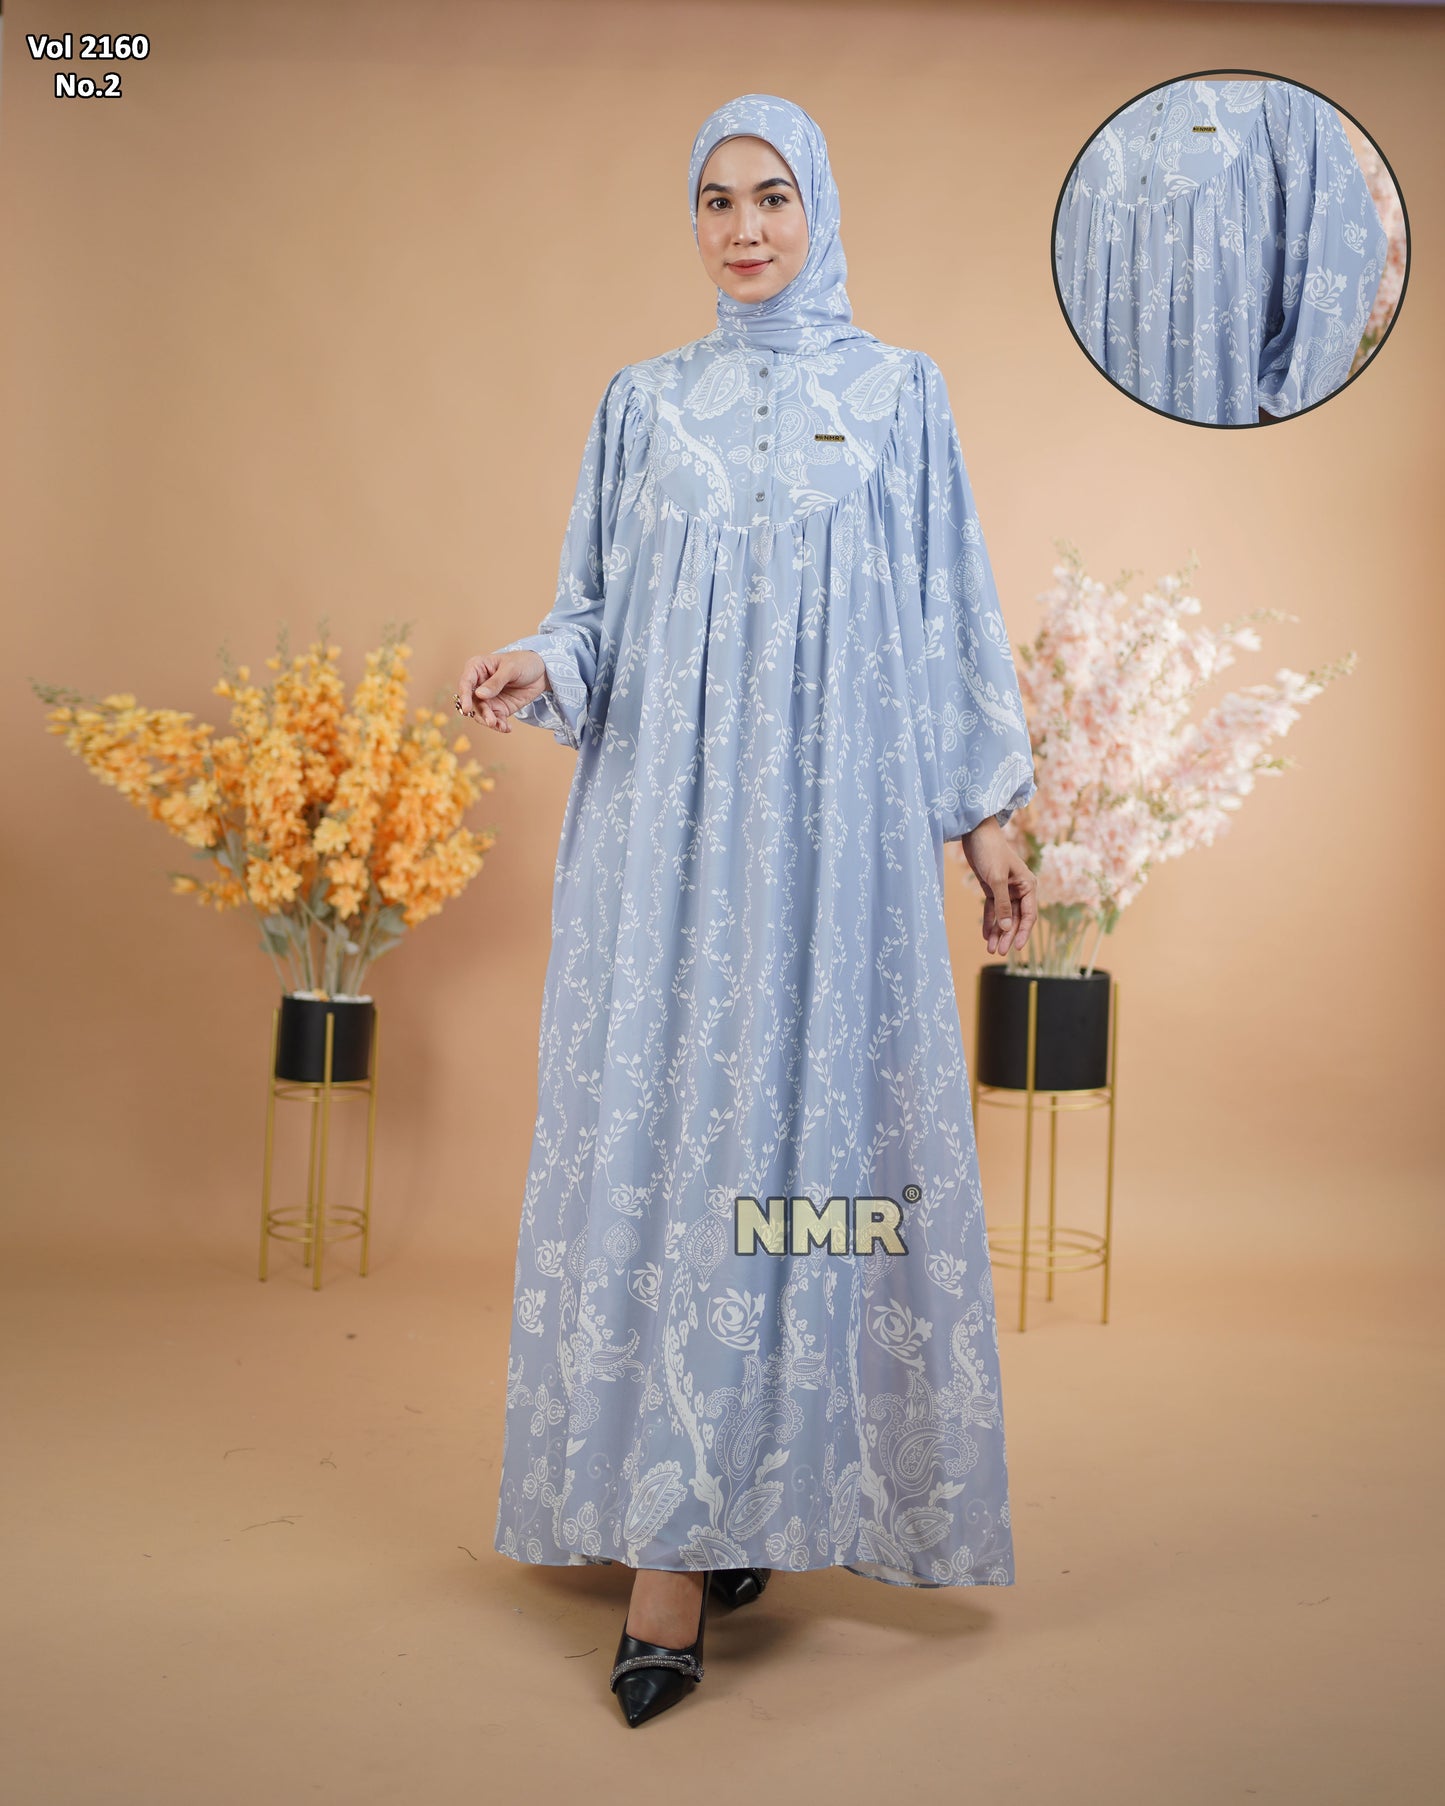 NMR Gamis Cerutty BabyDoll Premium Vol 2160-2 ( INC Hijab )